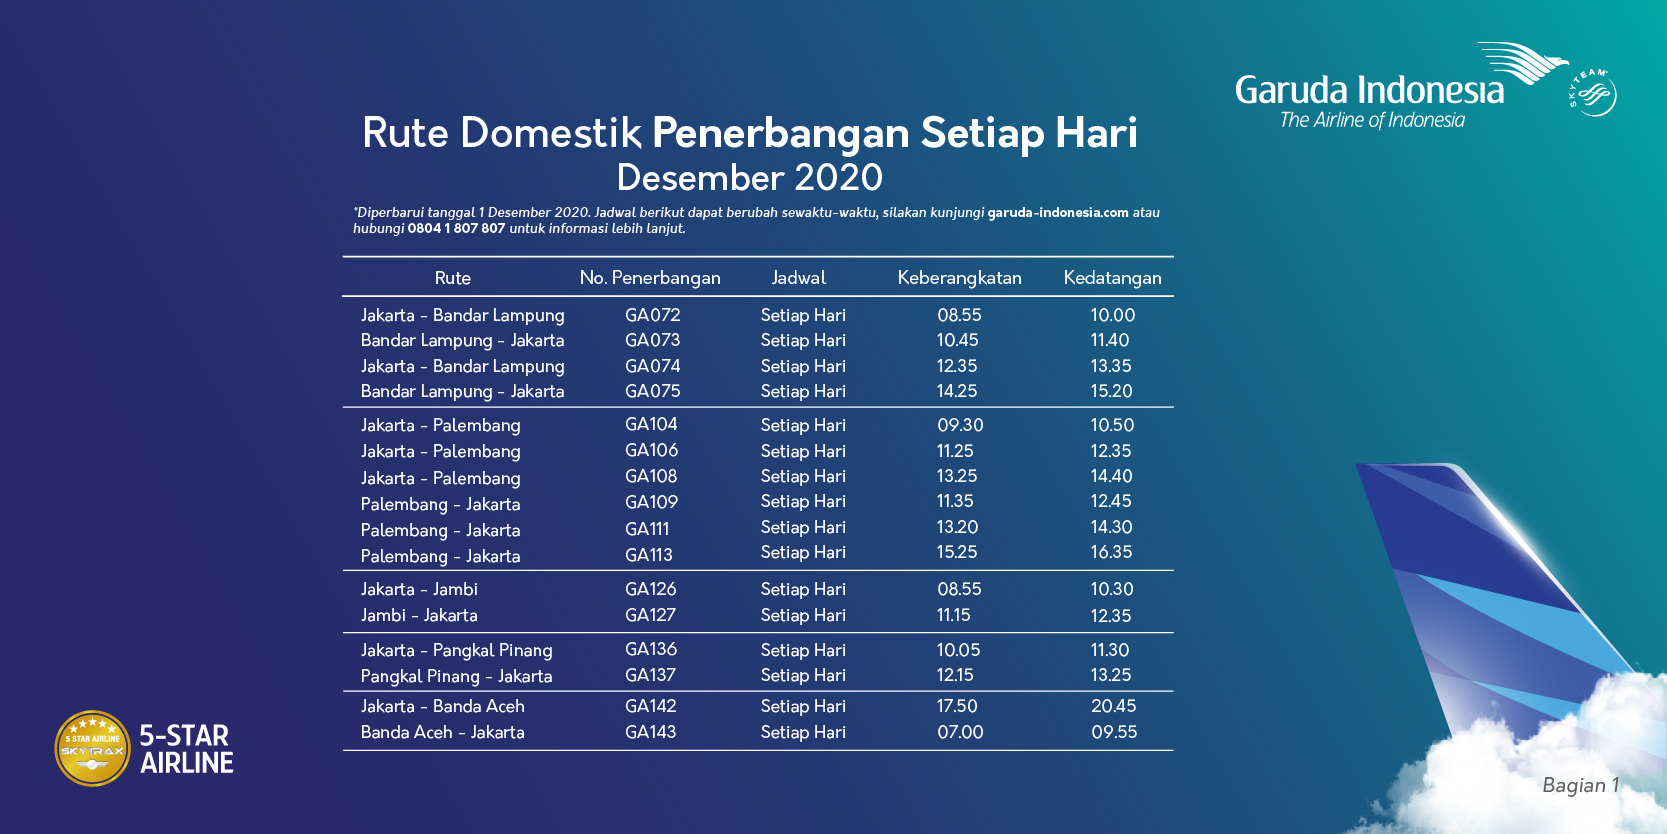 Jadwal penerbangan Garuda Indonesia rute domestik Desember 2020.